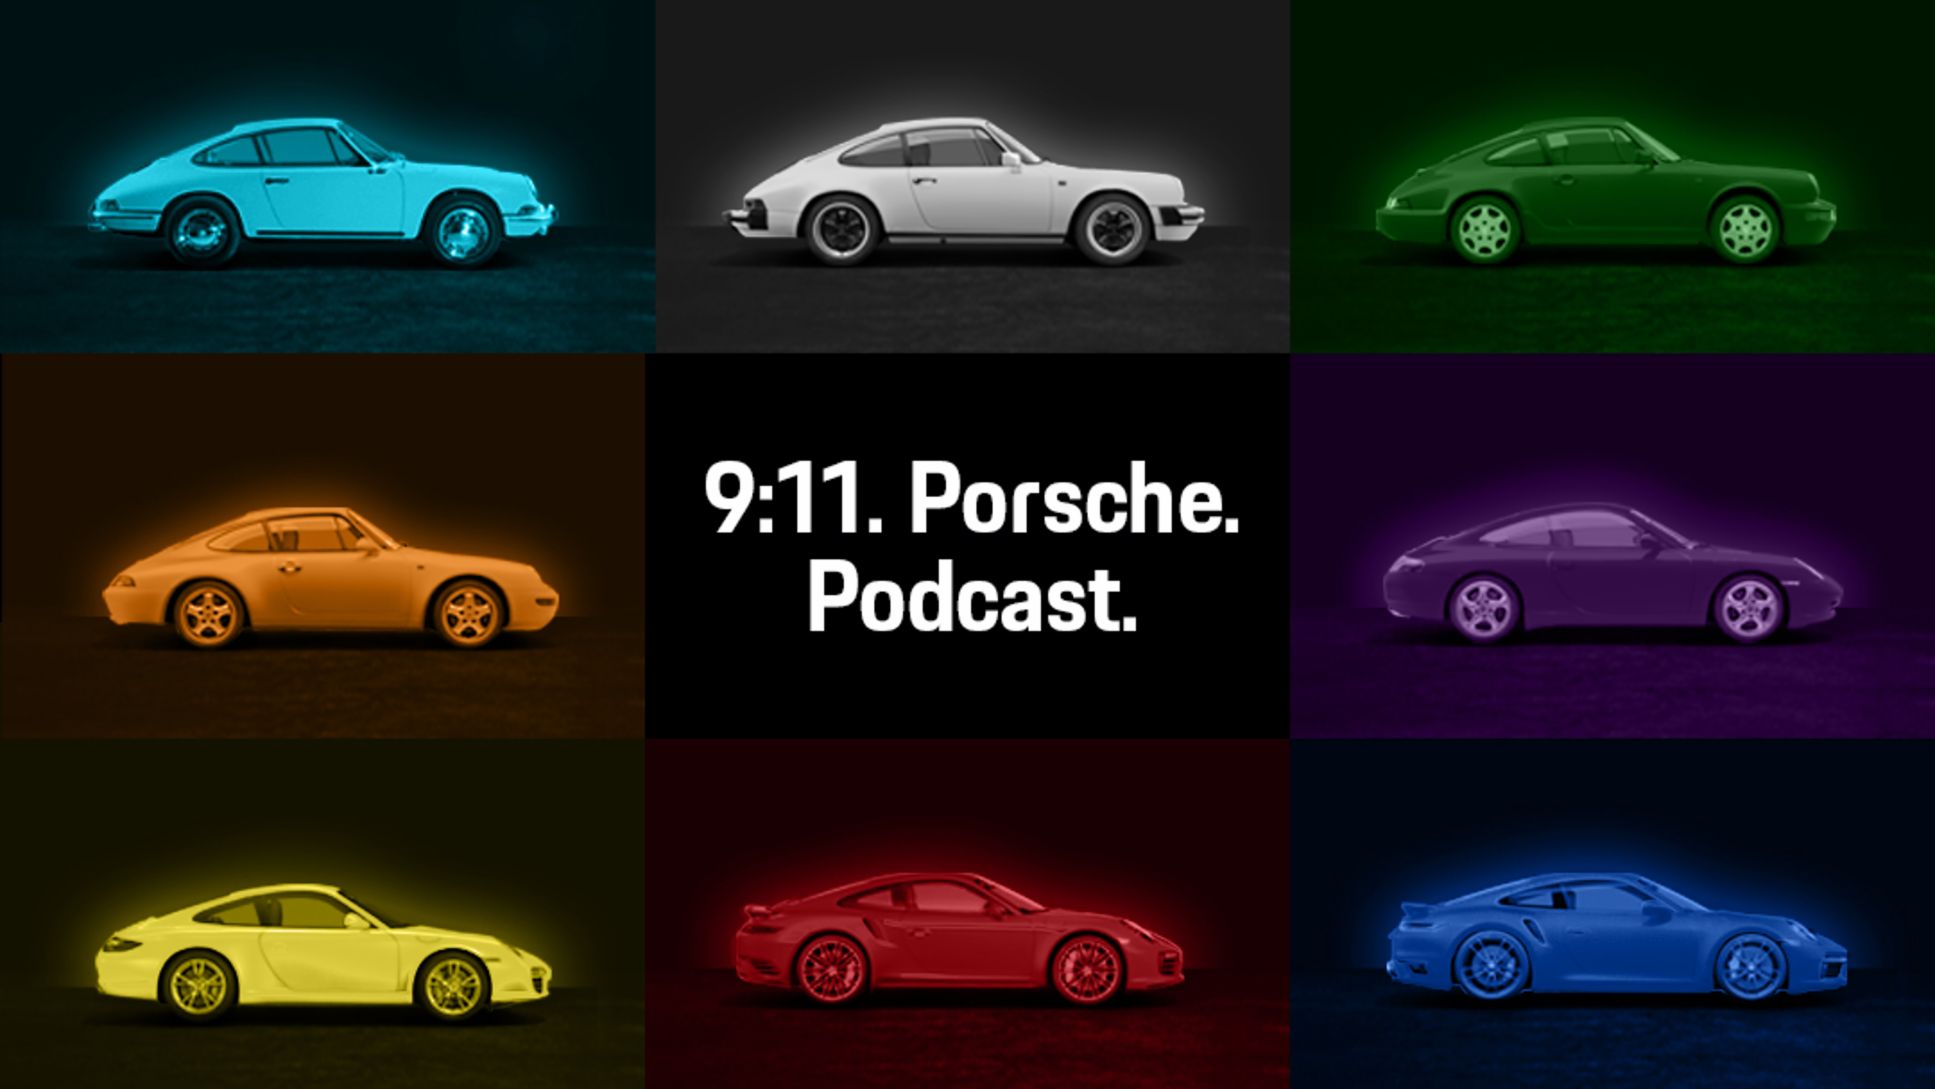 9:11. Porsche. Podcast. Folge 1, 2020, Porsche AG